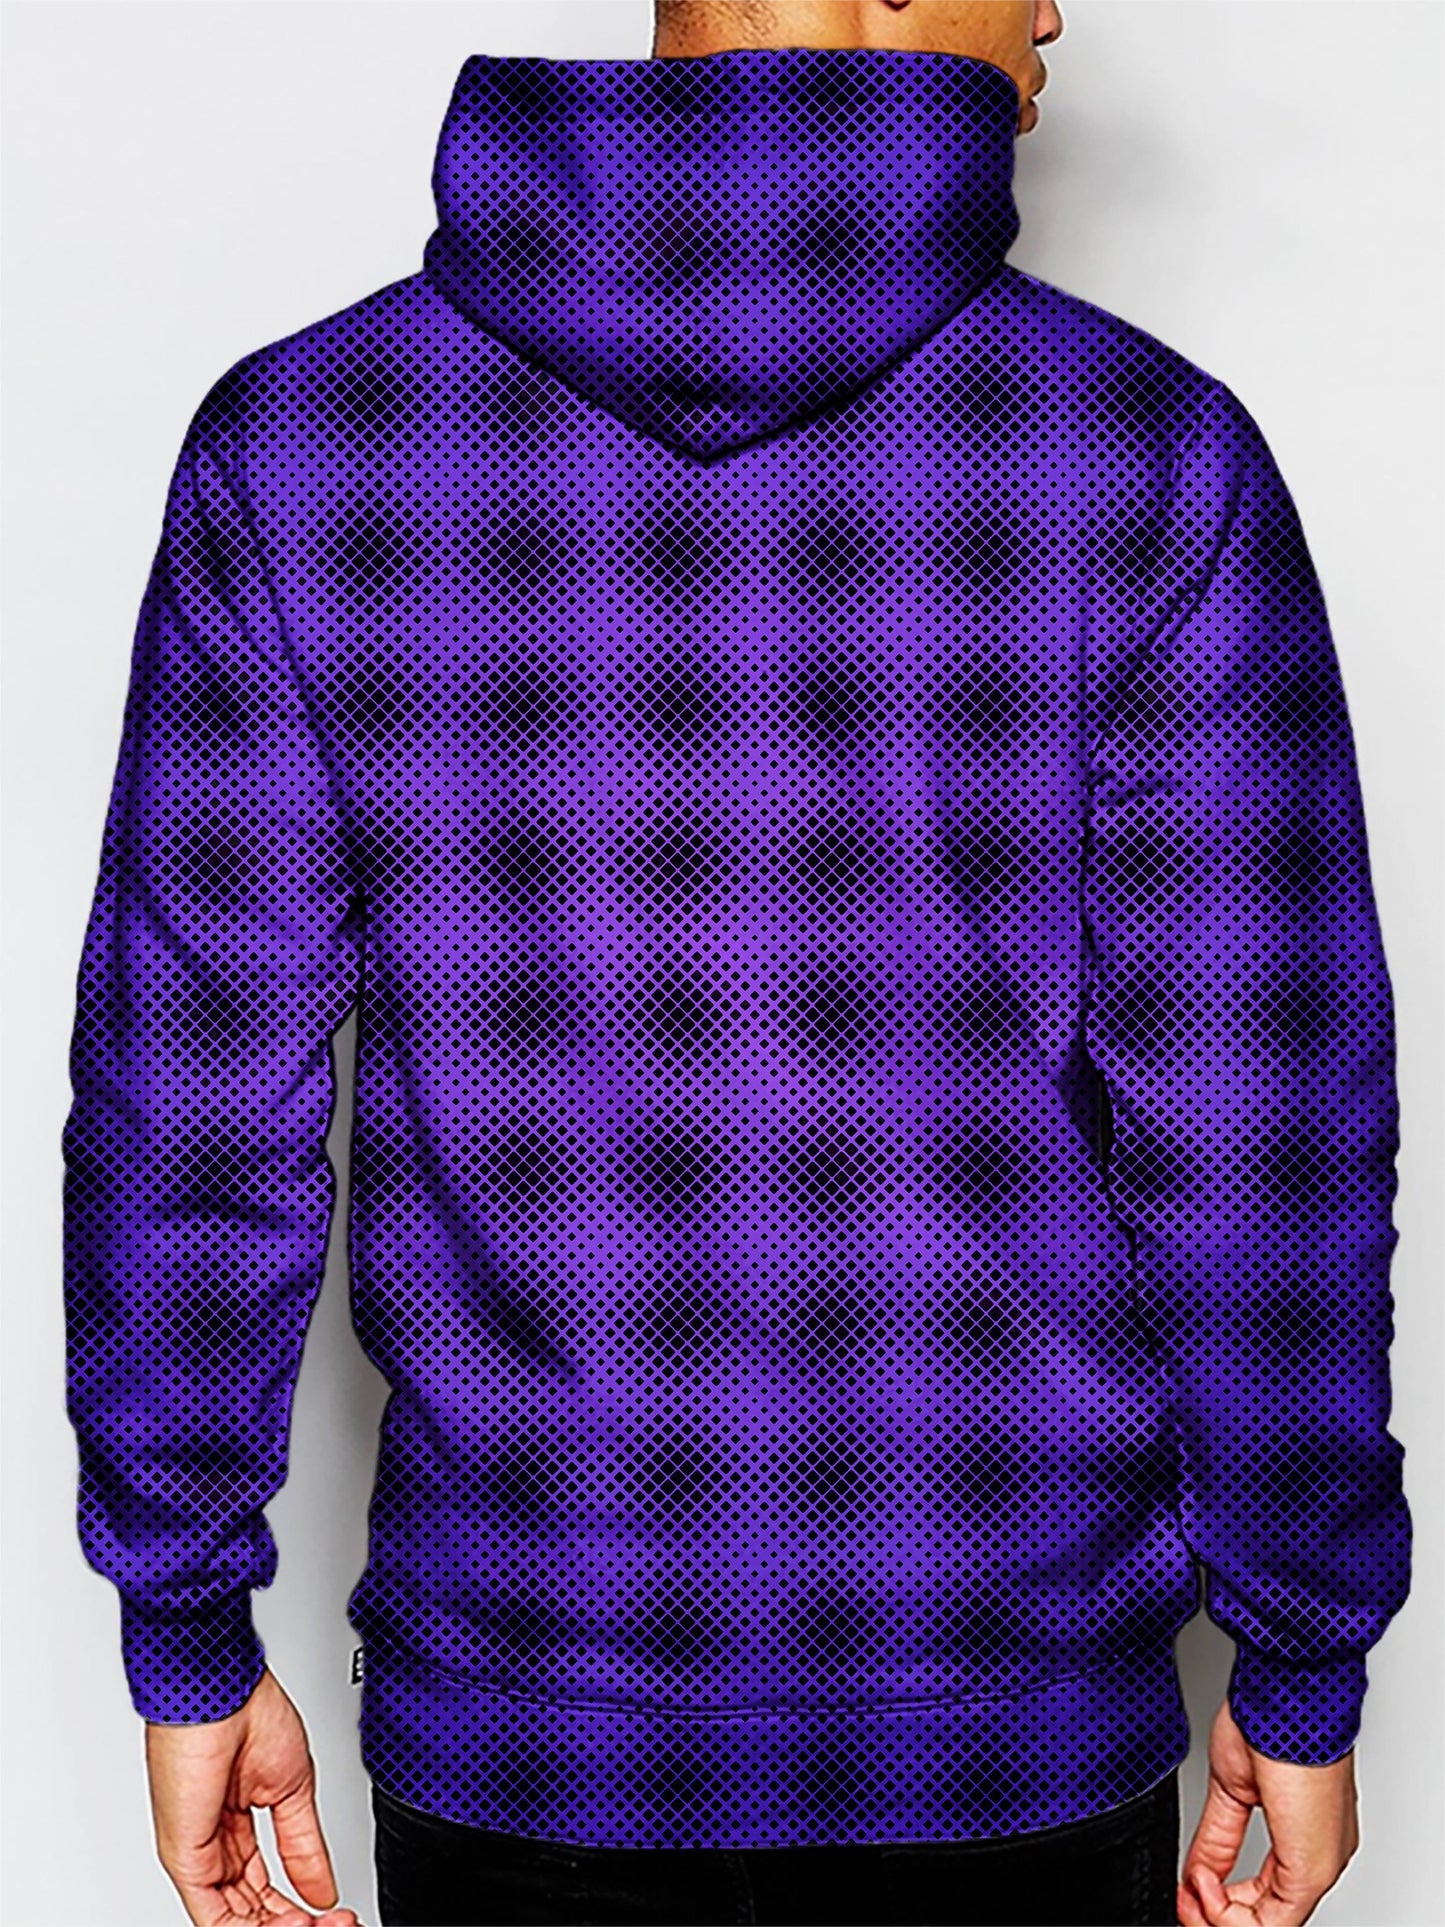 mens music festival hoodie - pink and purple pattern hoodie